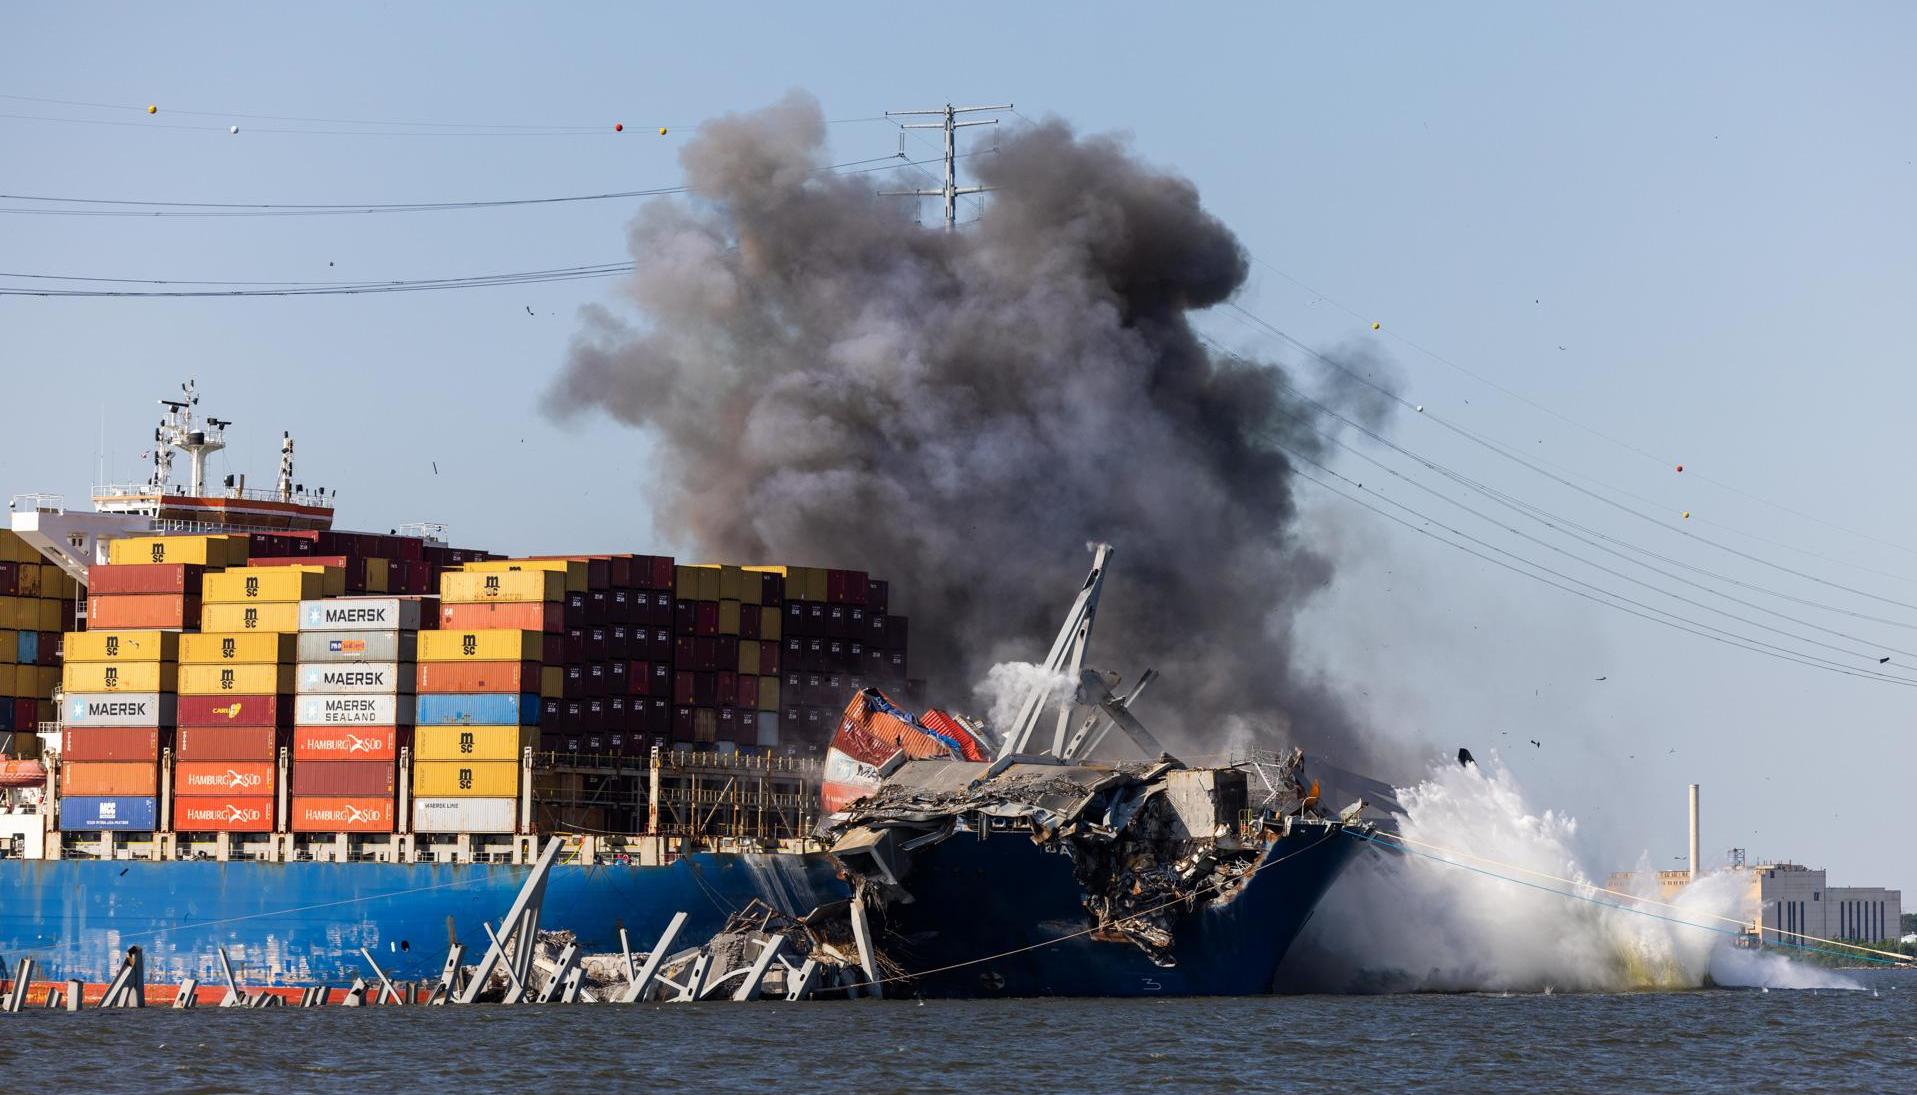 Los explosivos son usados para demoler parte del puente y así liberar el buque. 